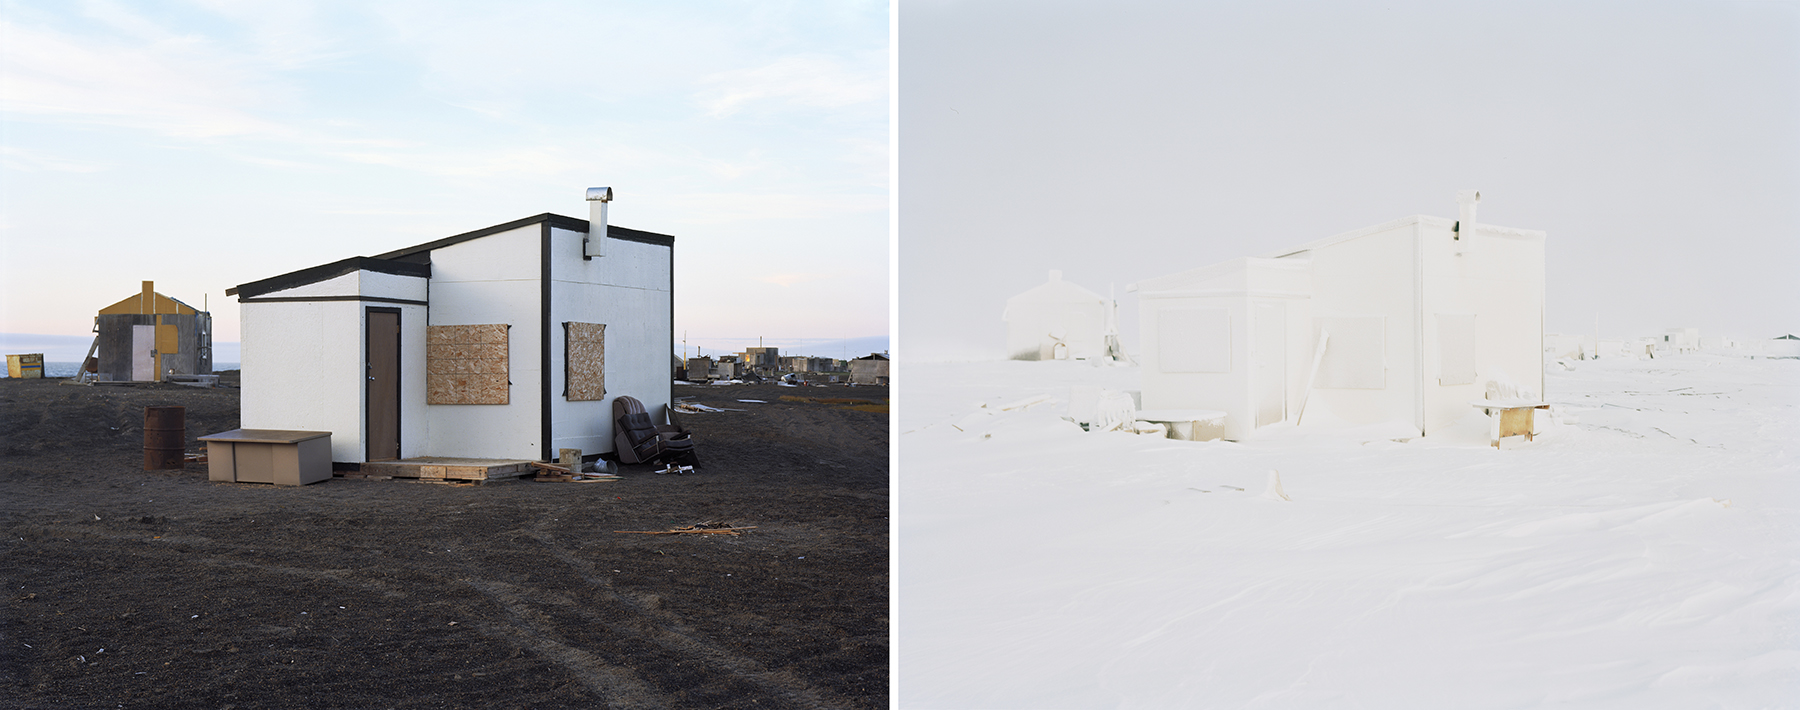 Eirik Johnson, Arctic Ocean, photography, climate change, landscape, seascape